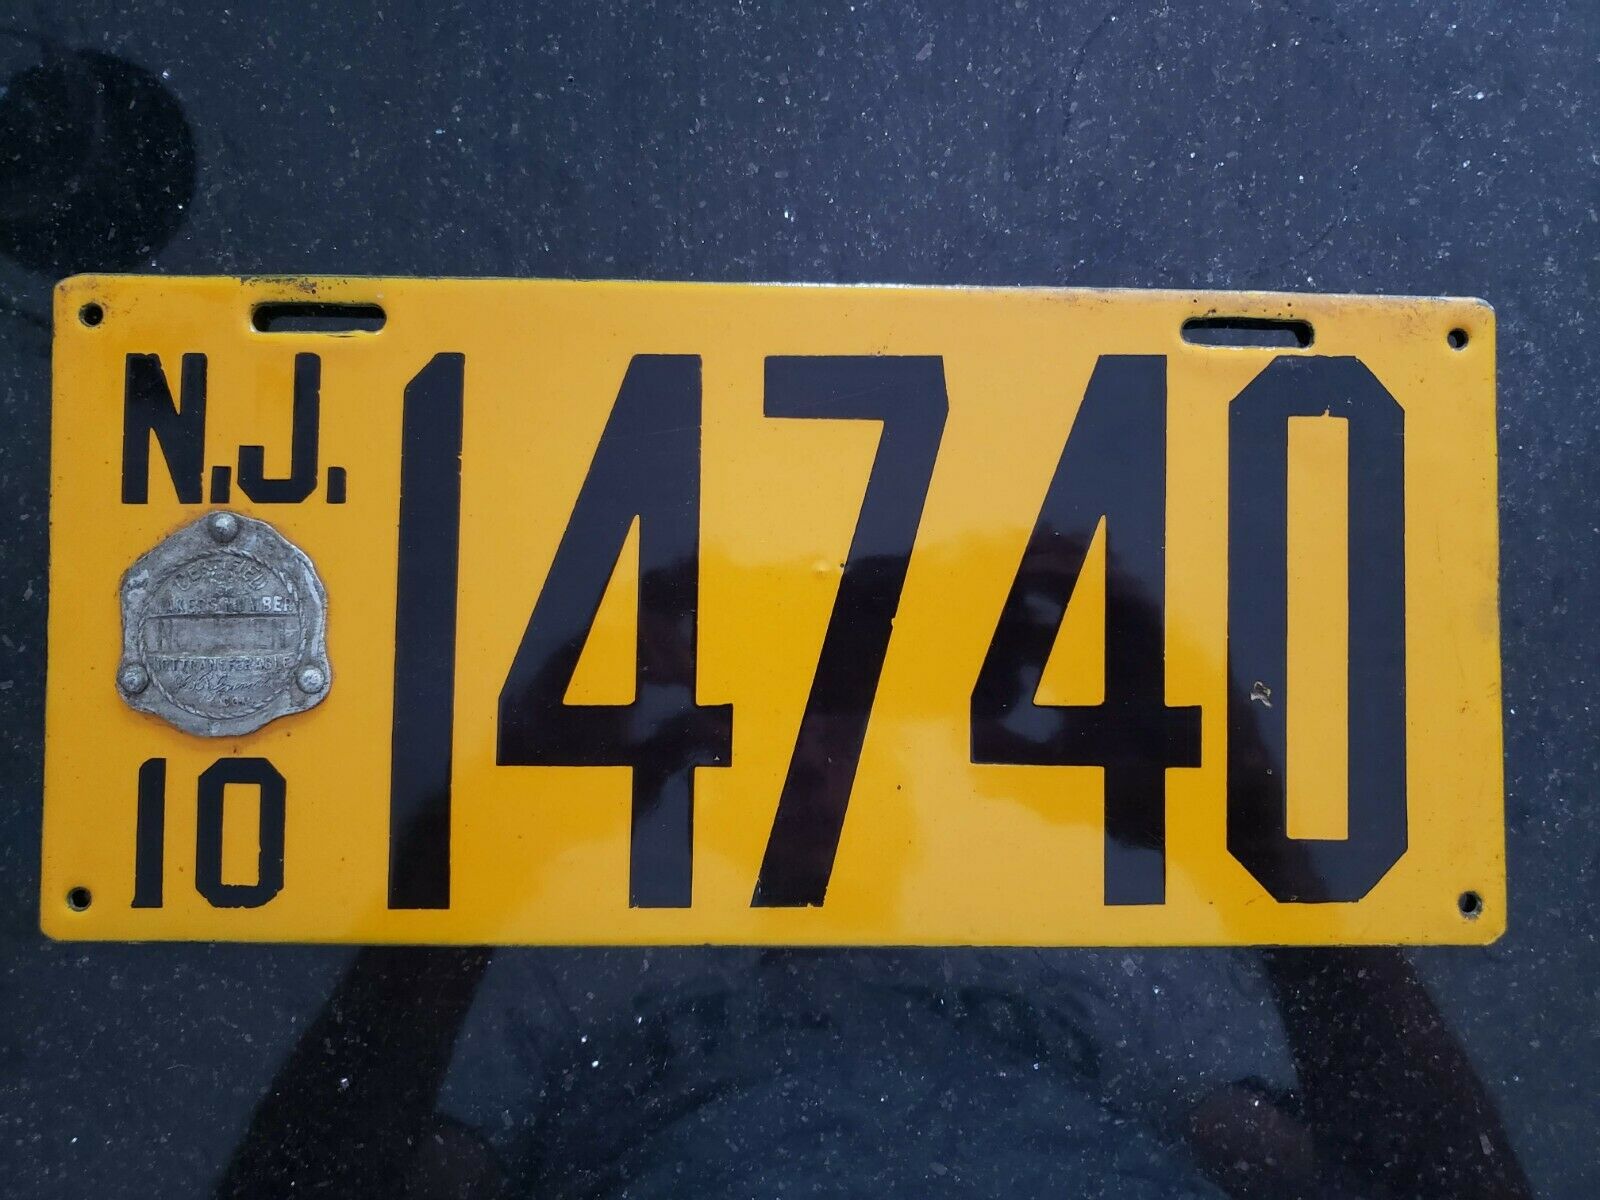 1910 New Jersey Nj Porcelain License Plate Car Tag Vehicle Vintage Registration